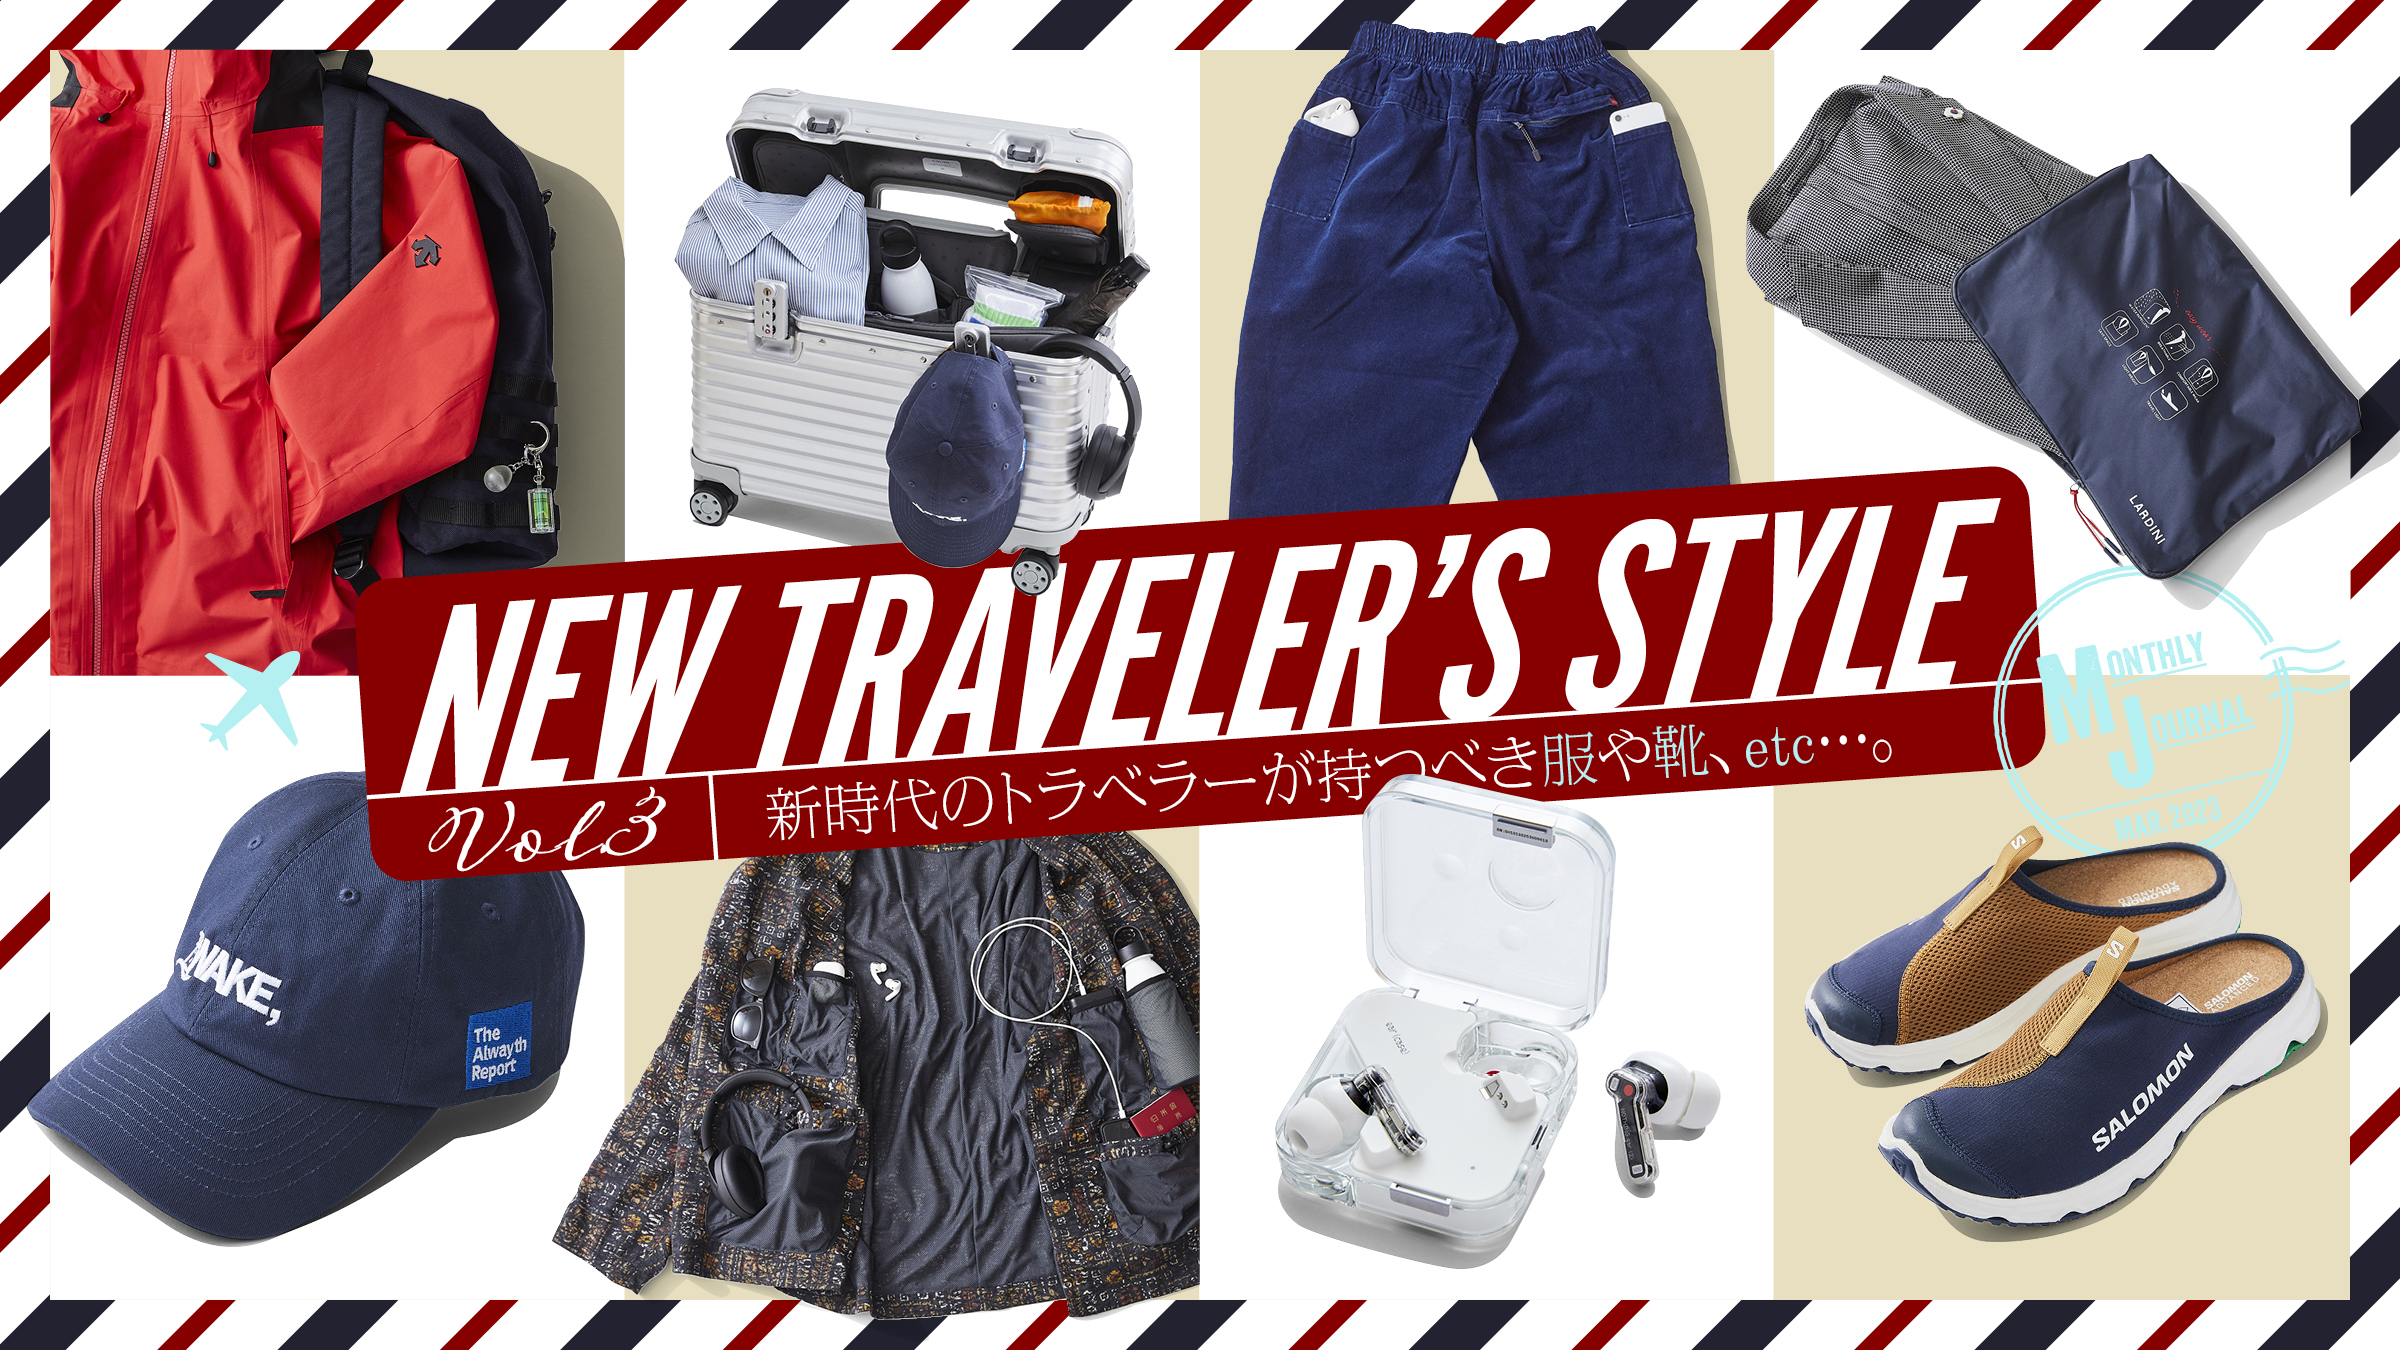 NEW TRAVELER’S STYLE Vol.03新時代のトラベラーが持つべき服や靴、etc…。